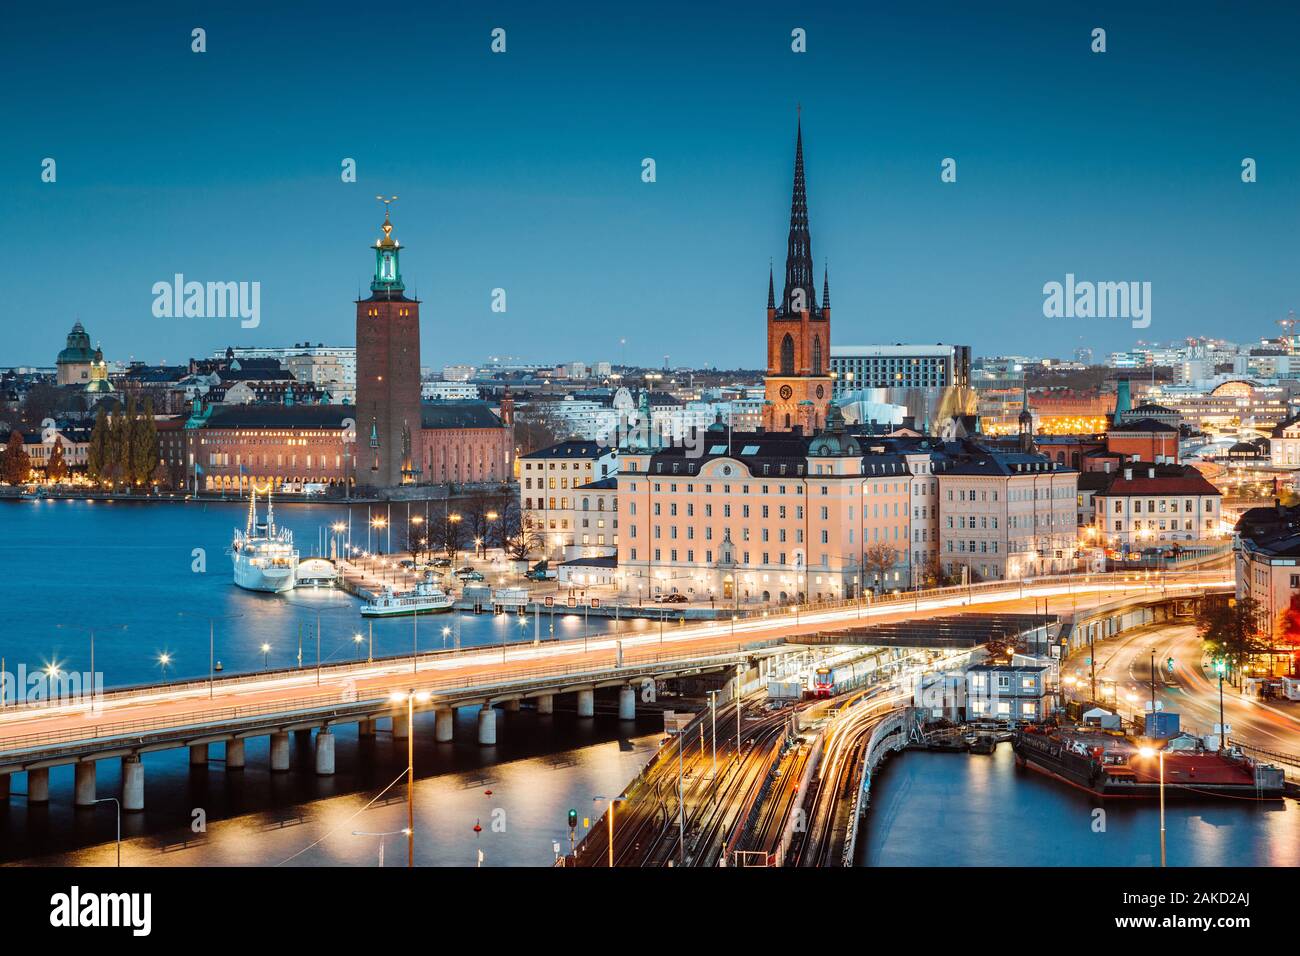 Vue panoramique sur le centre-ville de Stockholm avec Riddarholmen célèbre à Gamla Stan dans le magnifique crépuscule, Södermalm, le centre de Stockholm, Suède Banque D'Images